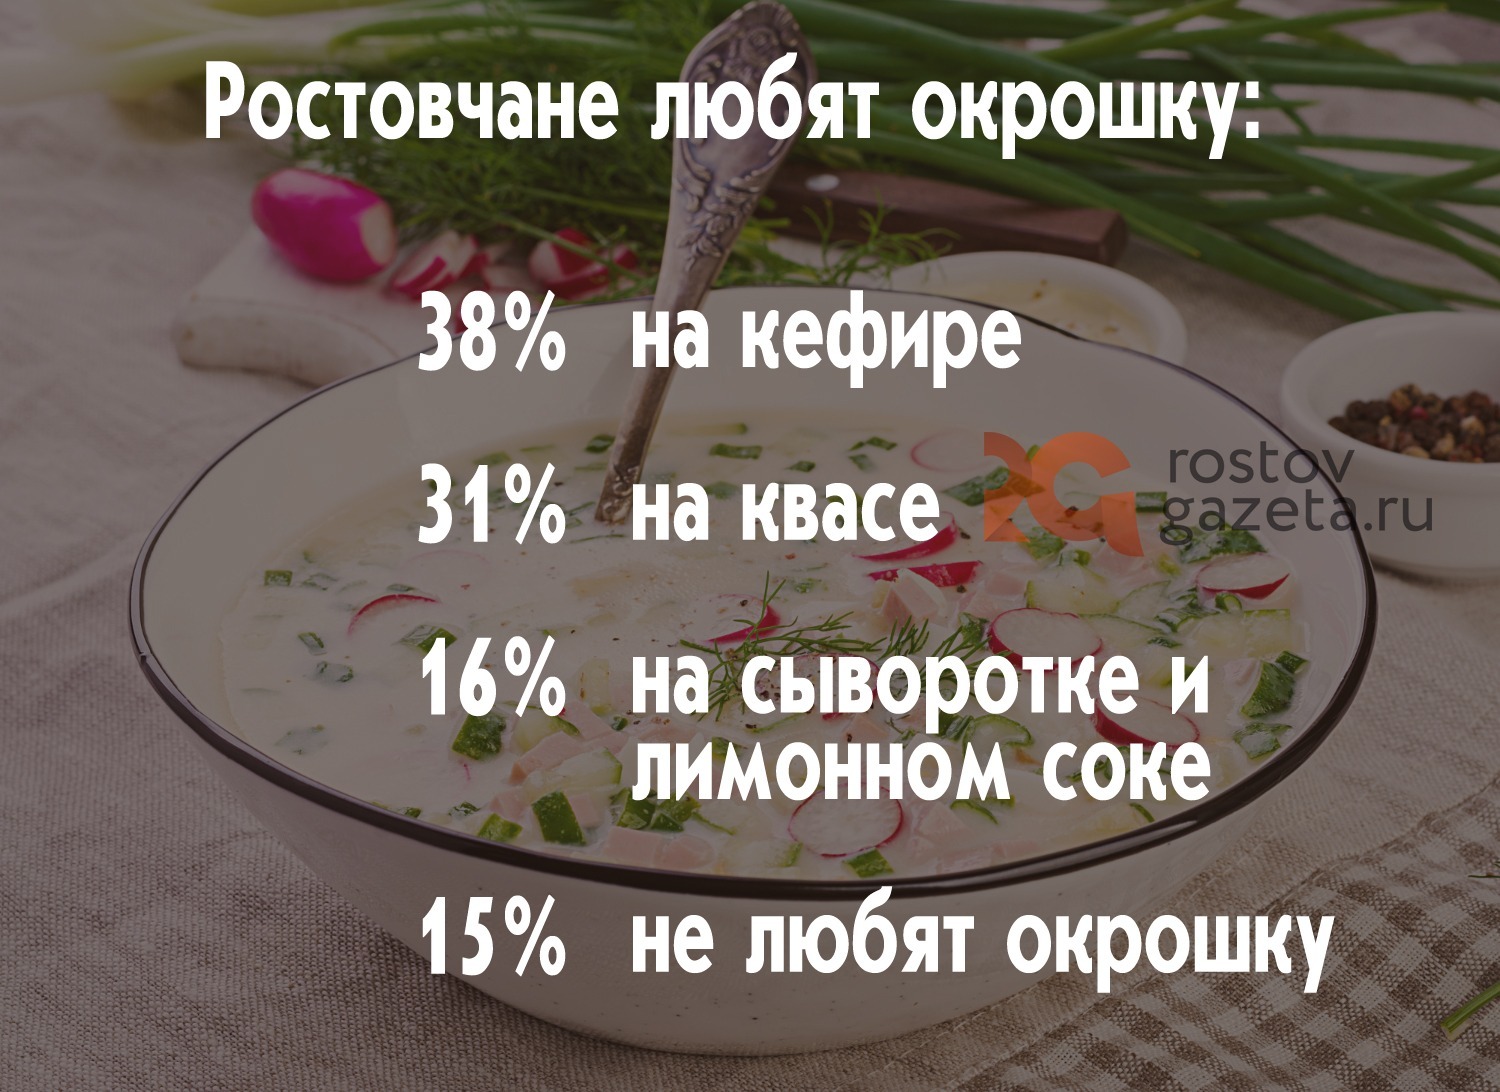 Что касается предпочтений, то абсолютное большинство ростовчан признаются, что любят окрошку на кефире